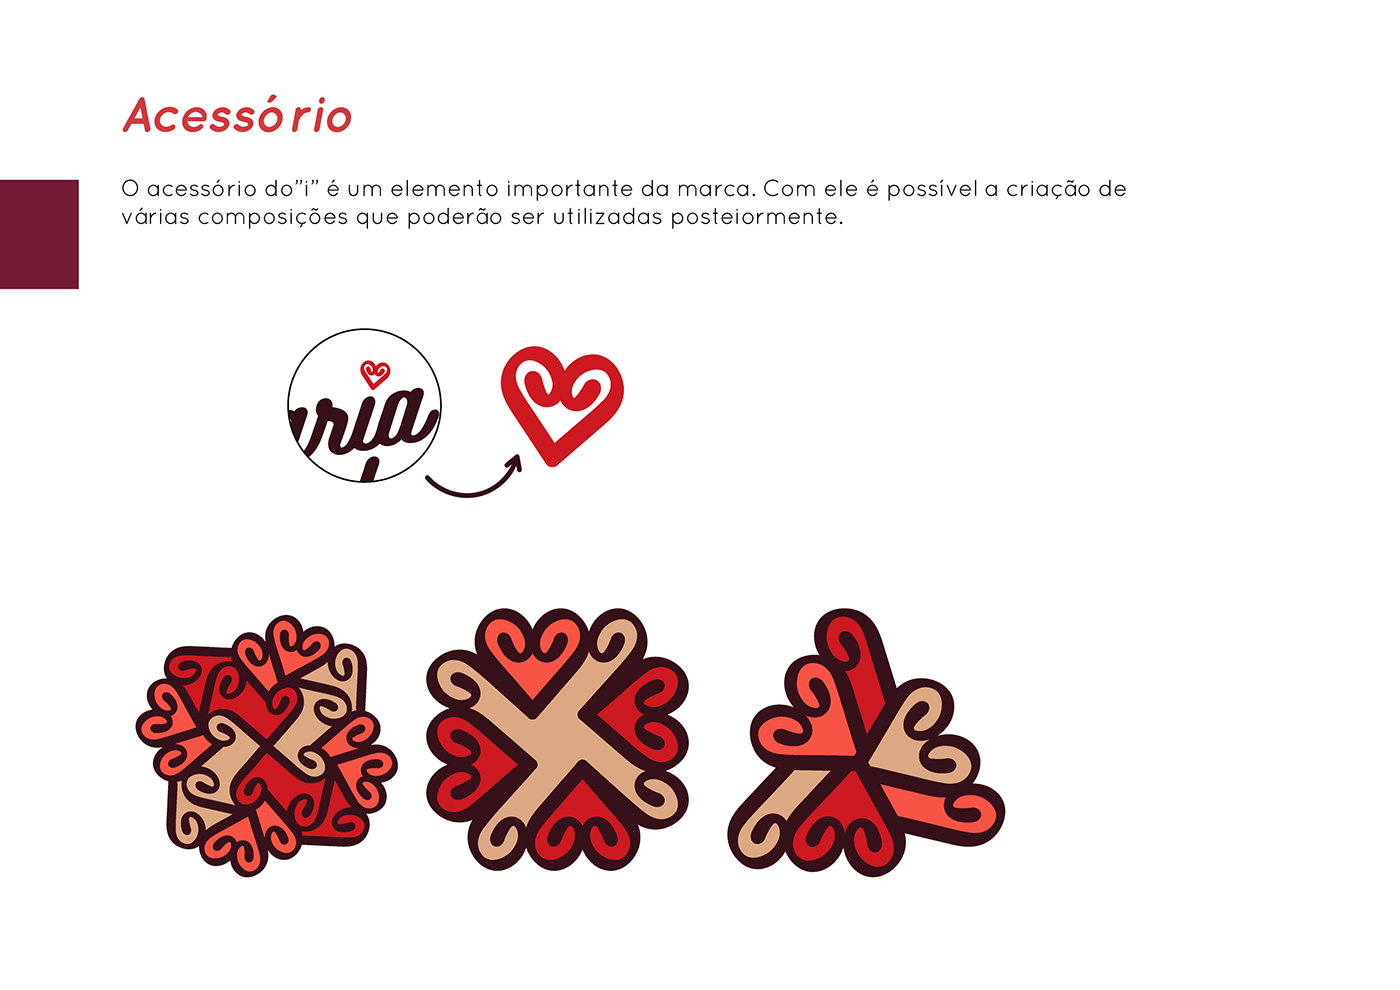 #marca #branding #brand #identidadevisual #projeto #project #Design #GraphicDesign #DesignGrafico